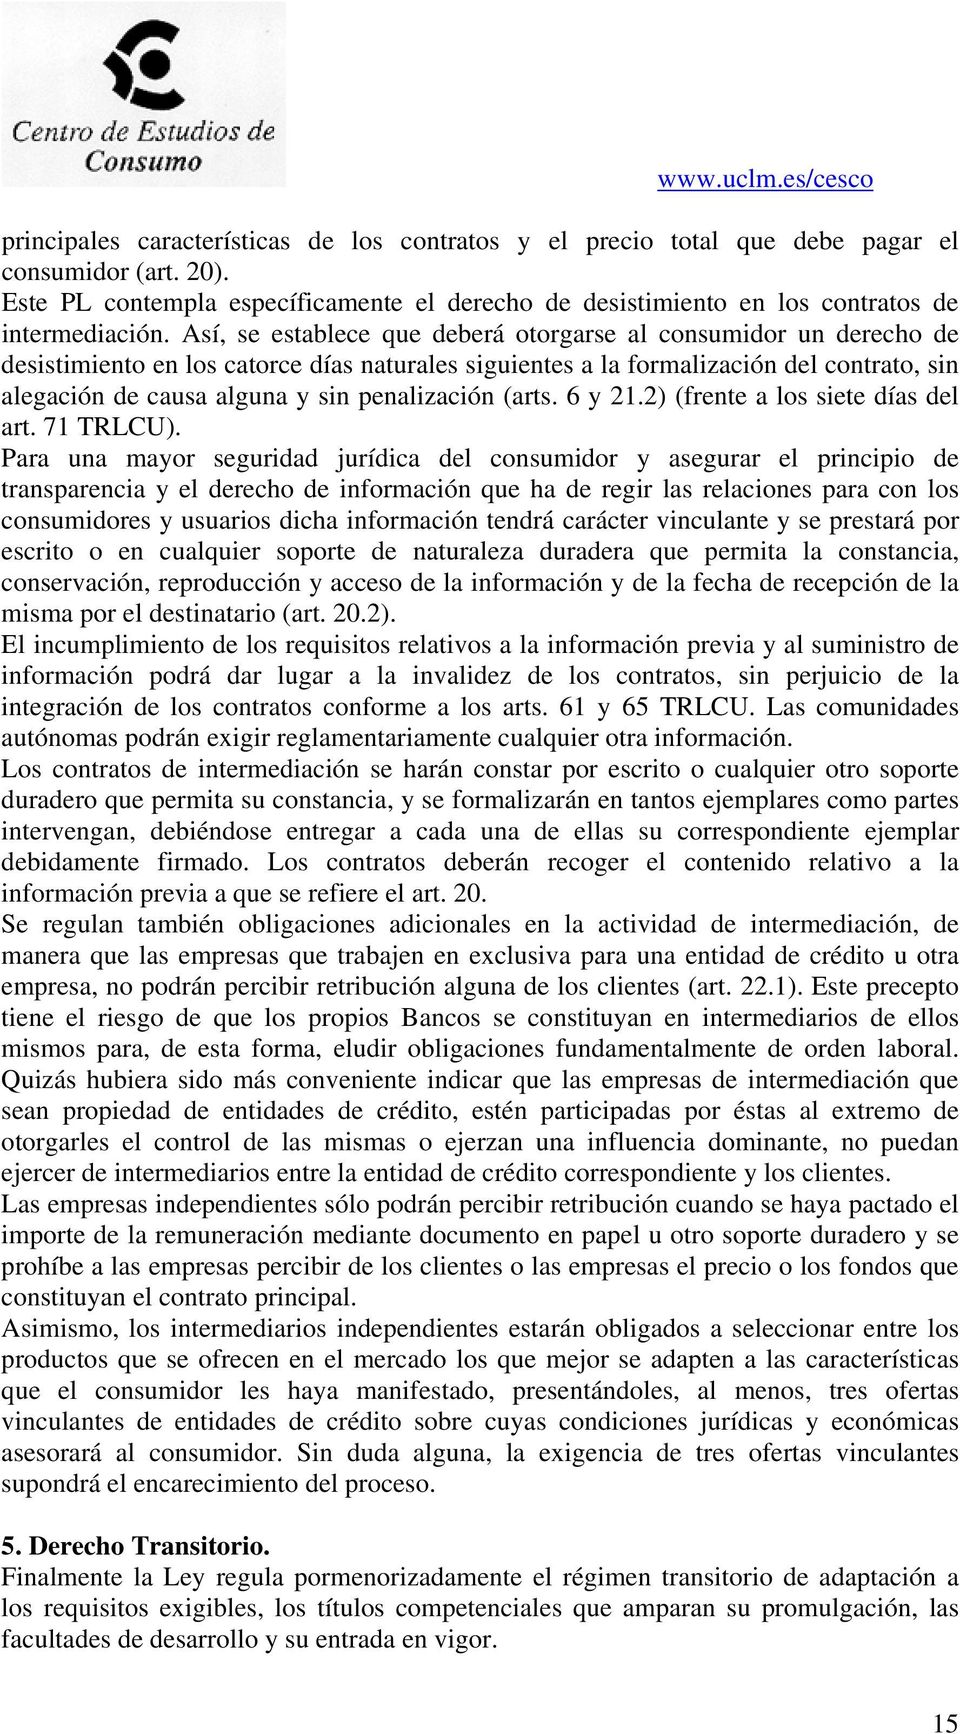 penalización (arts. 6 y 21.2) (frente a los siete días del art. 71 TRLCU).